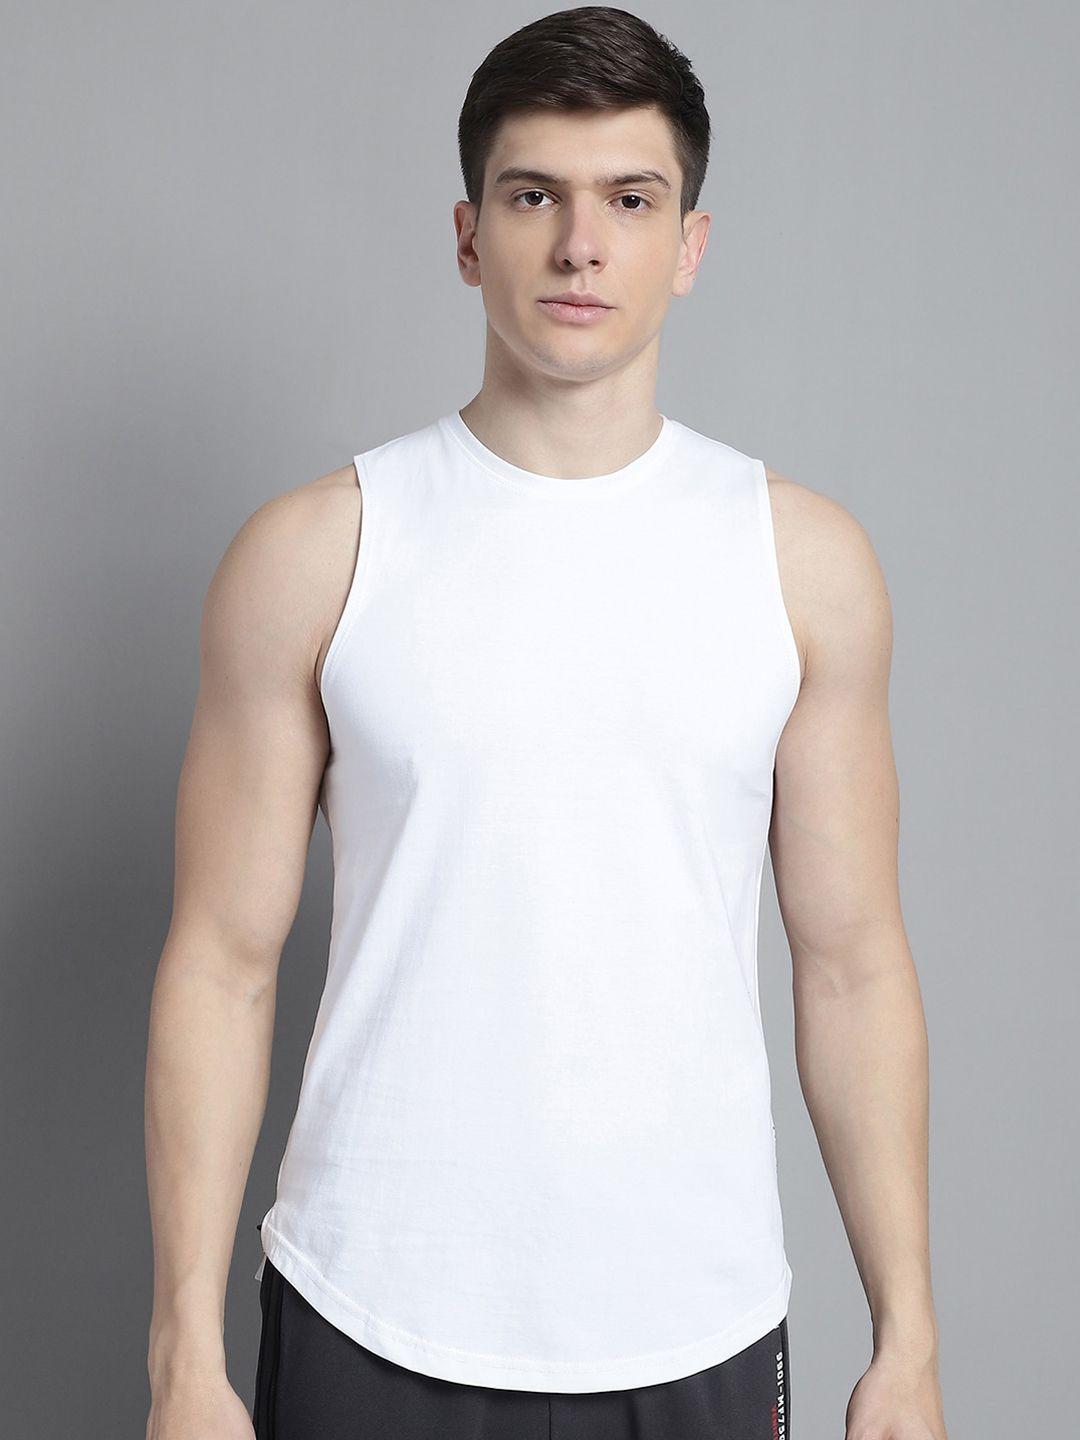 fbar-round-neck-bio-wash-pure-cotton-innerwear-vests-fb-ae-02-s